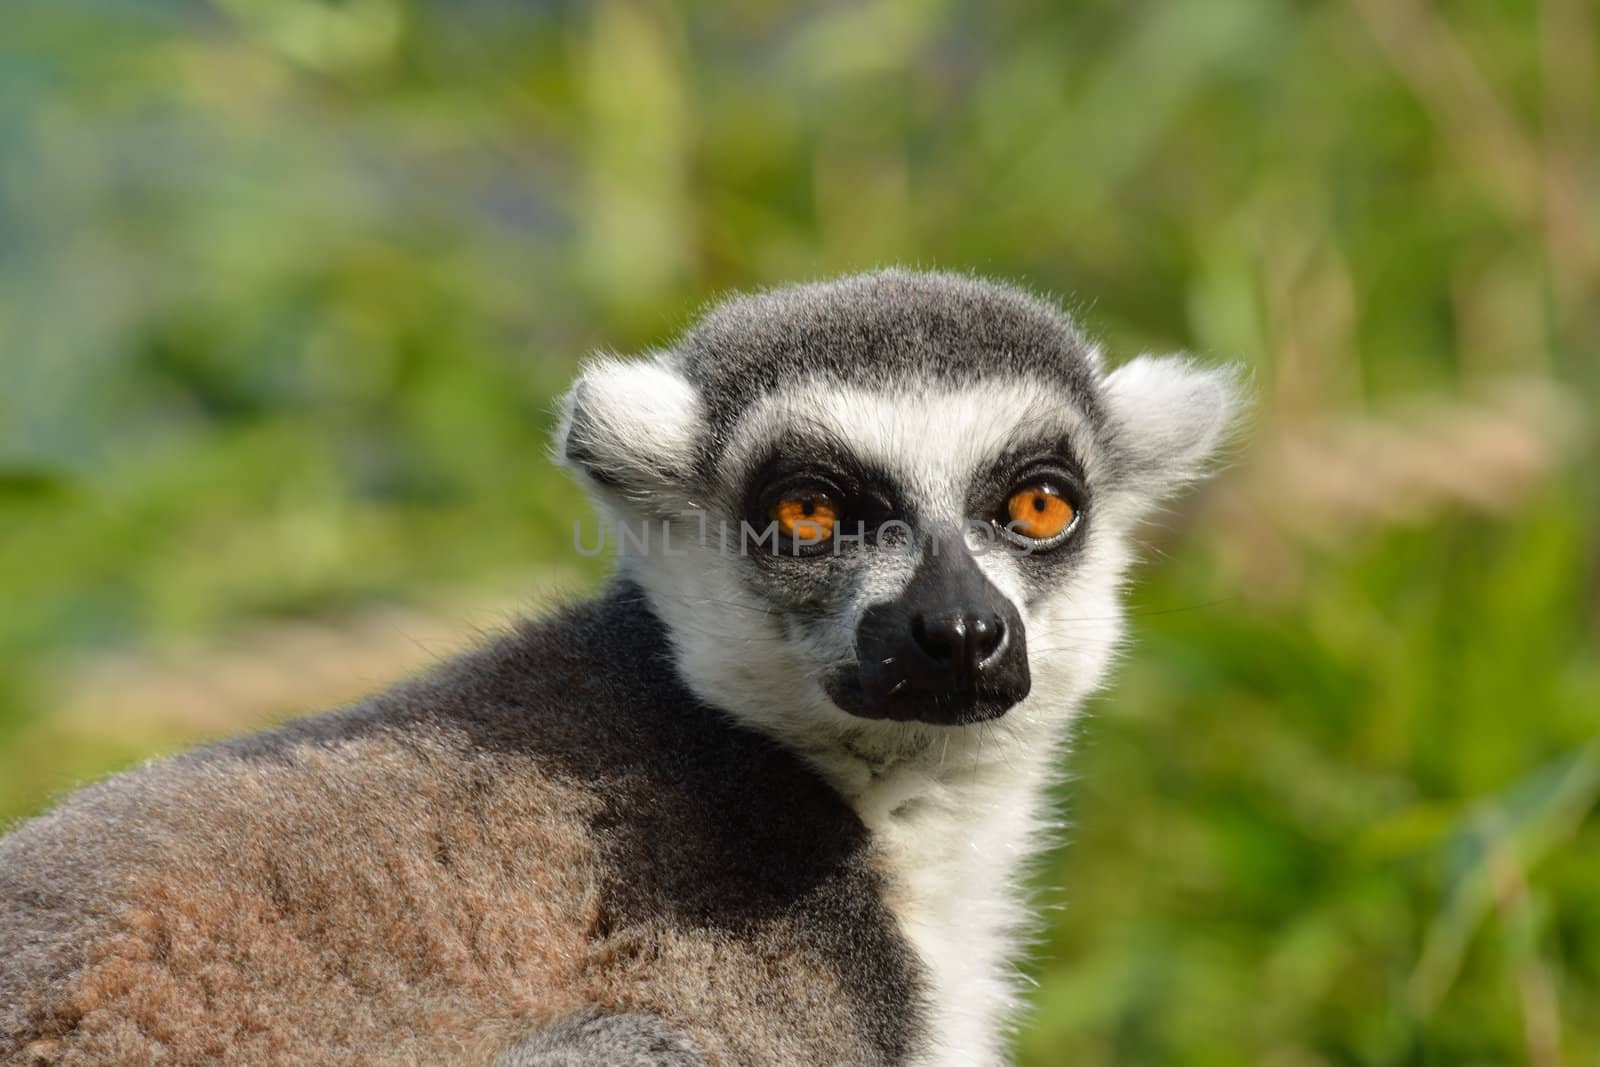 lemur head by pauws99